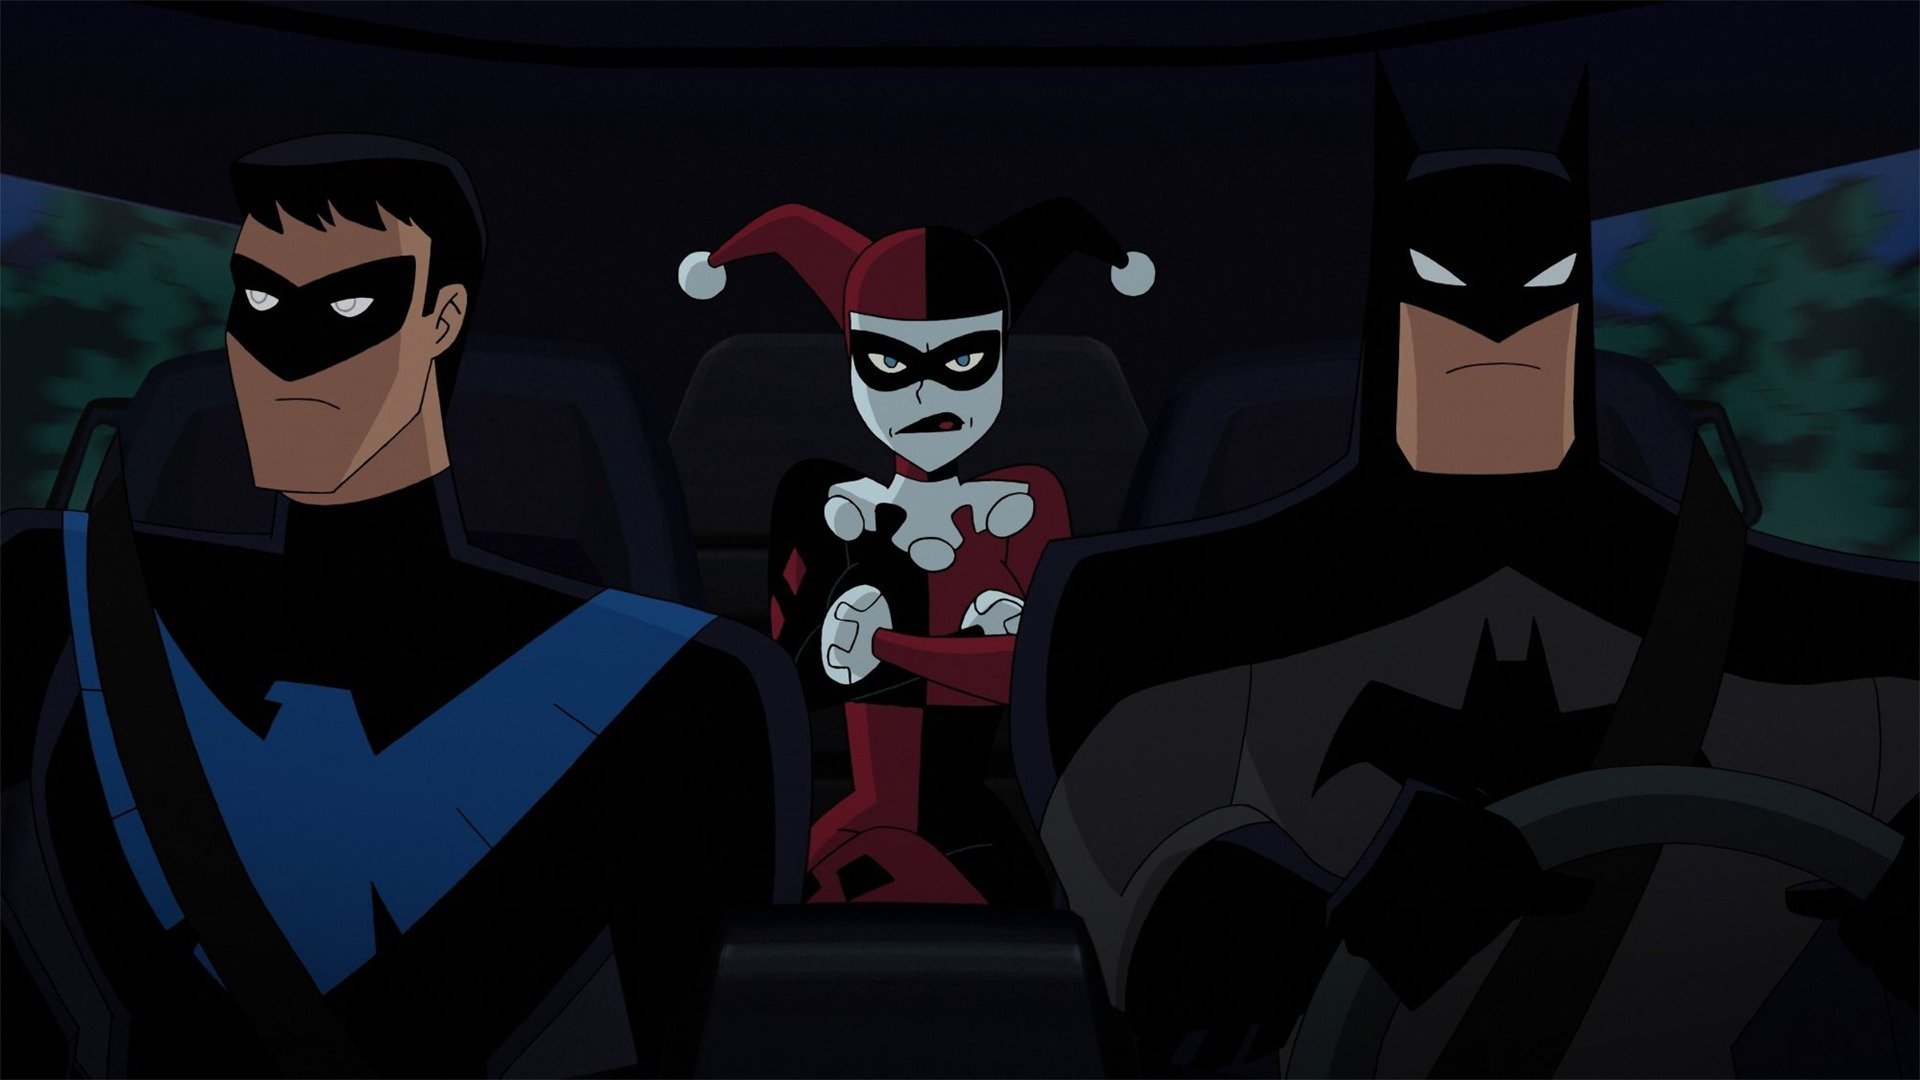 DCU: Batman and Harley Quinn